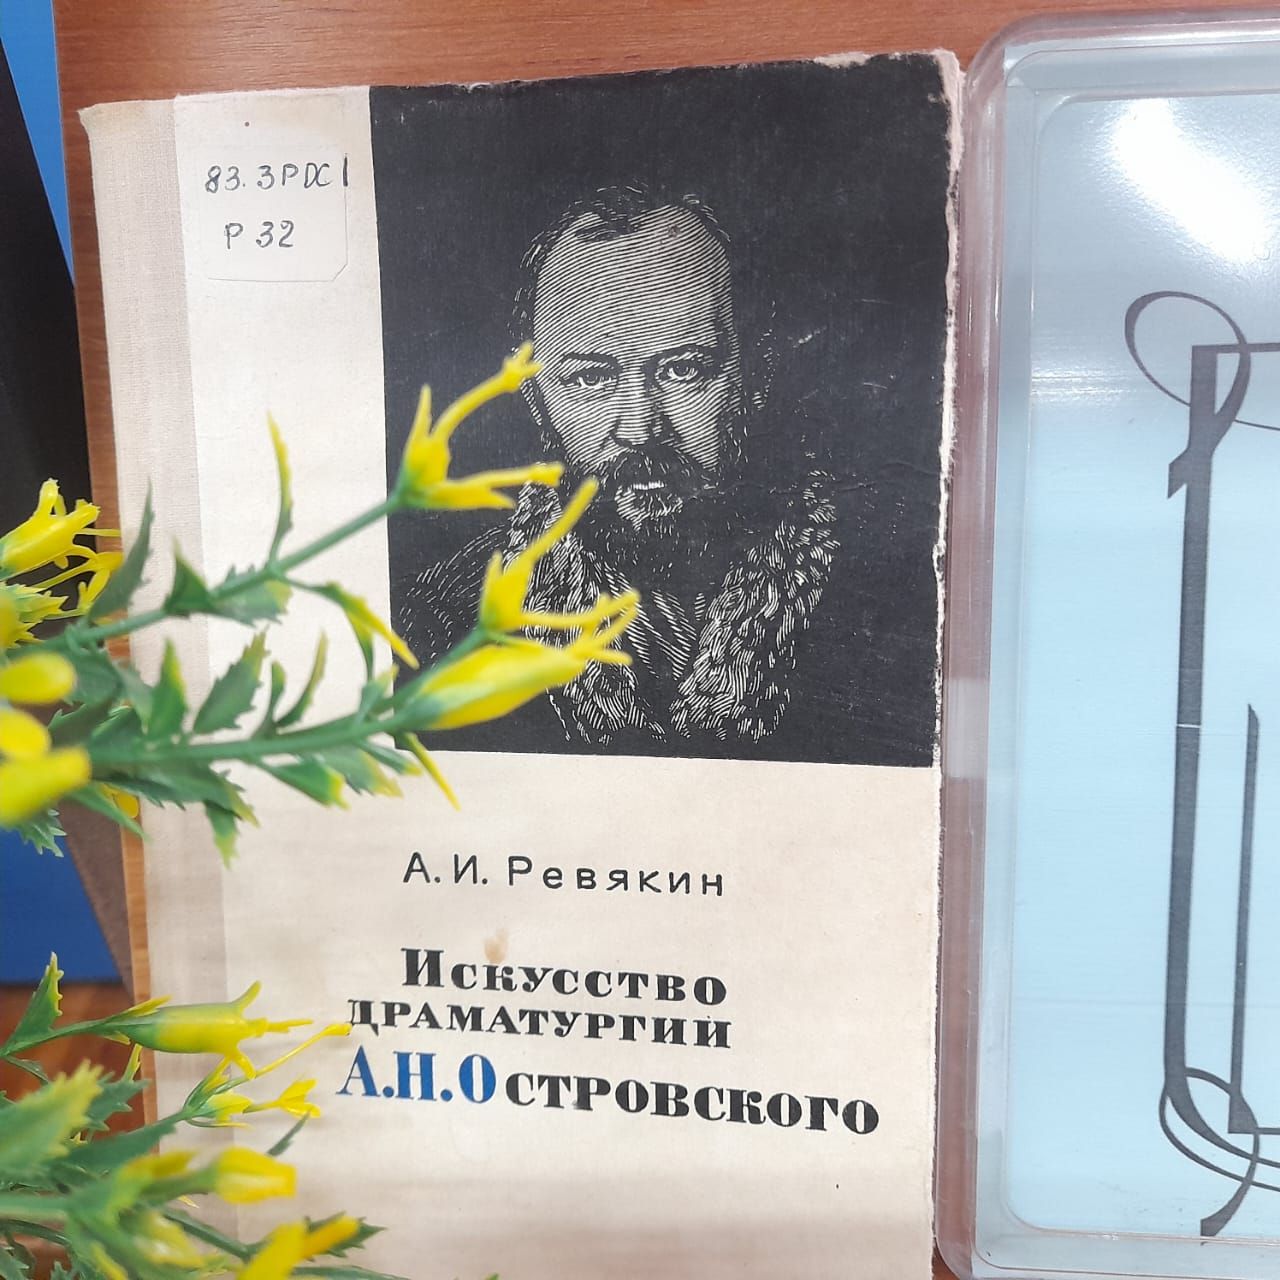 Выставка – портрет «Мастер русской драмы» организована в Лаишевской библиотеке